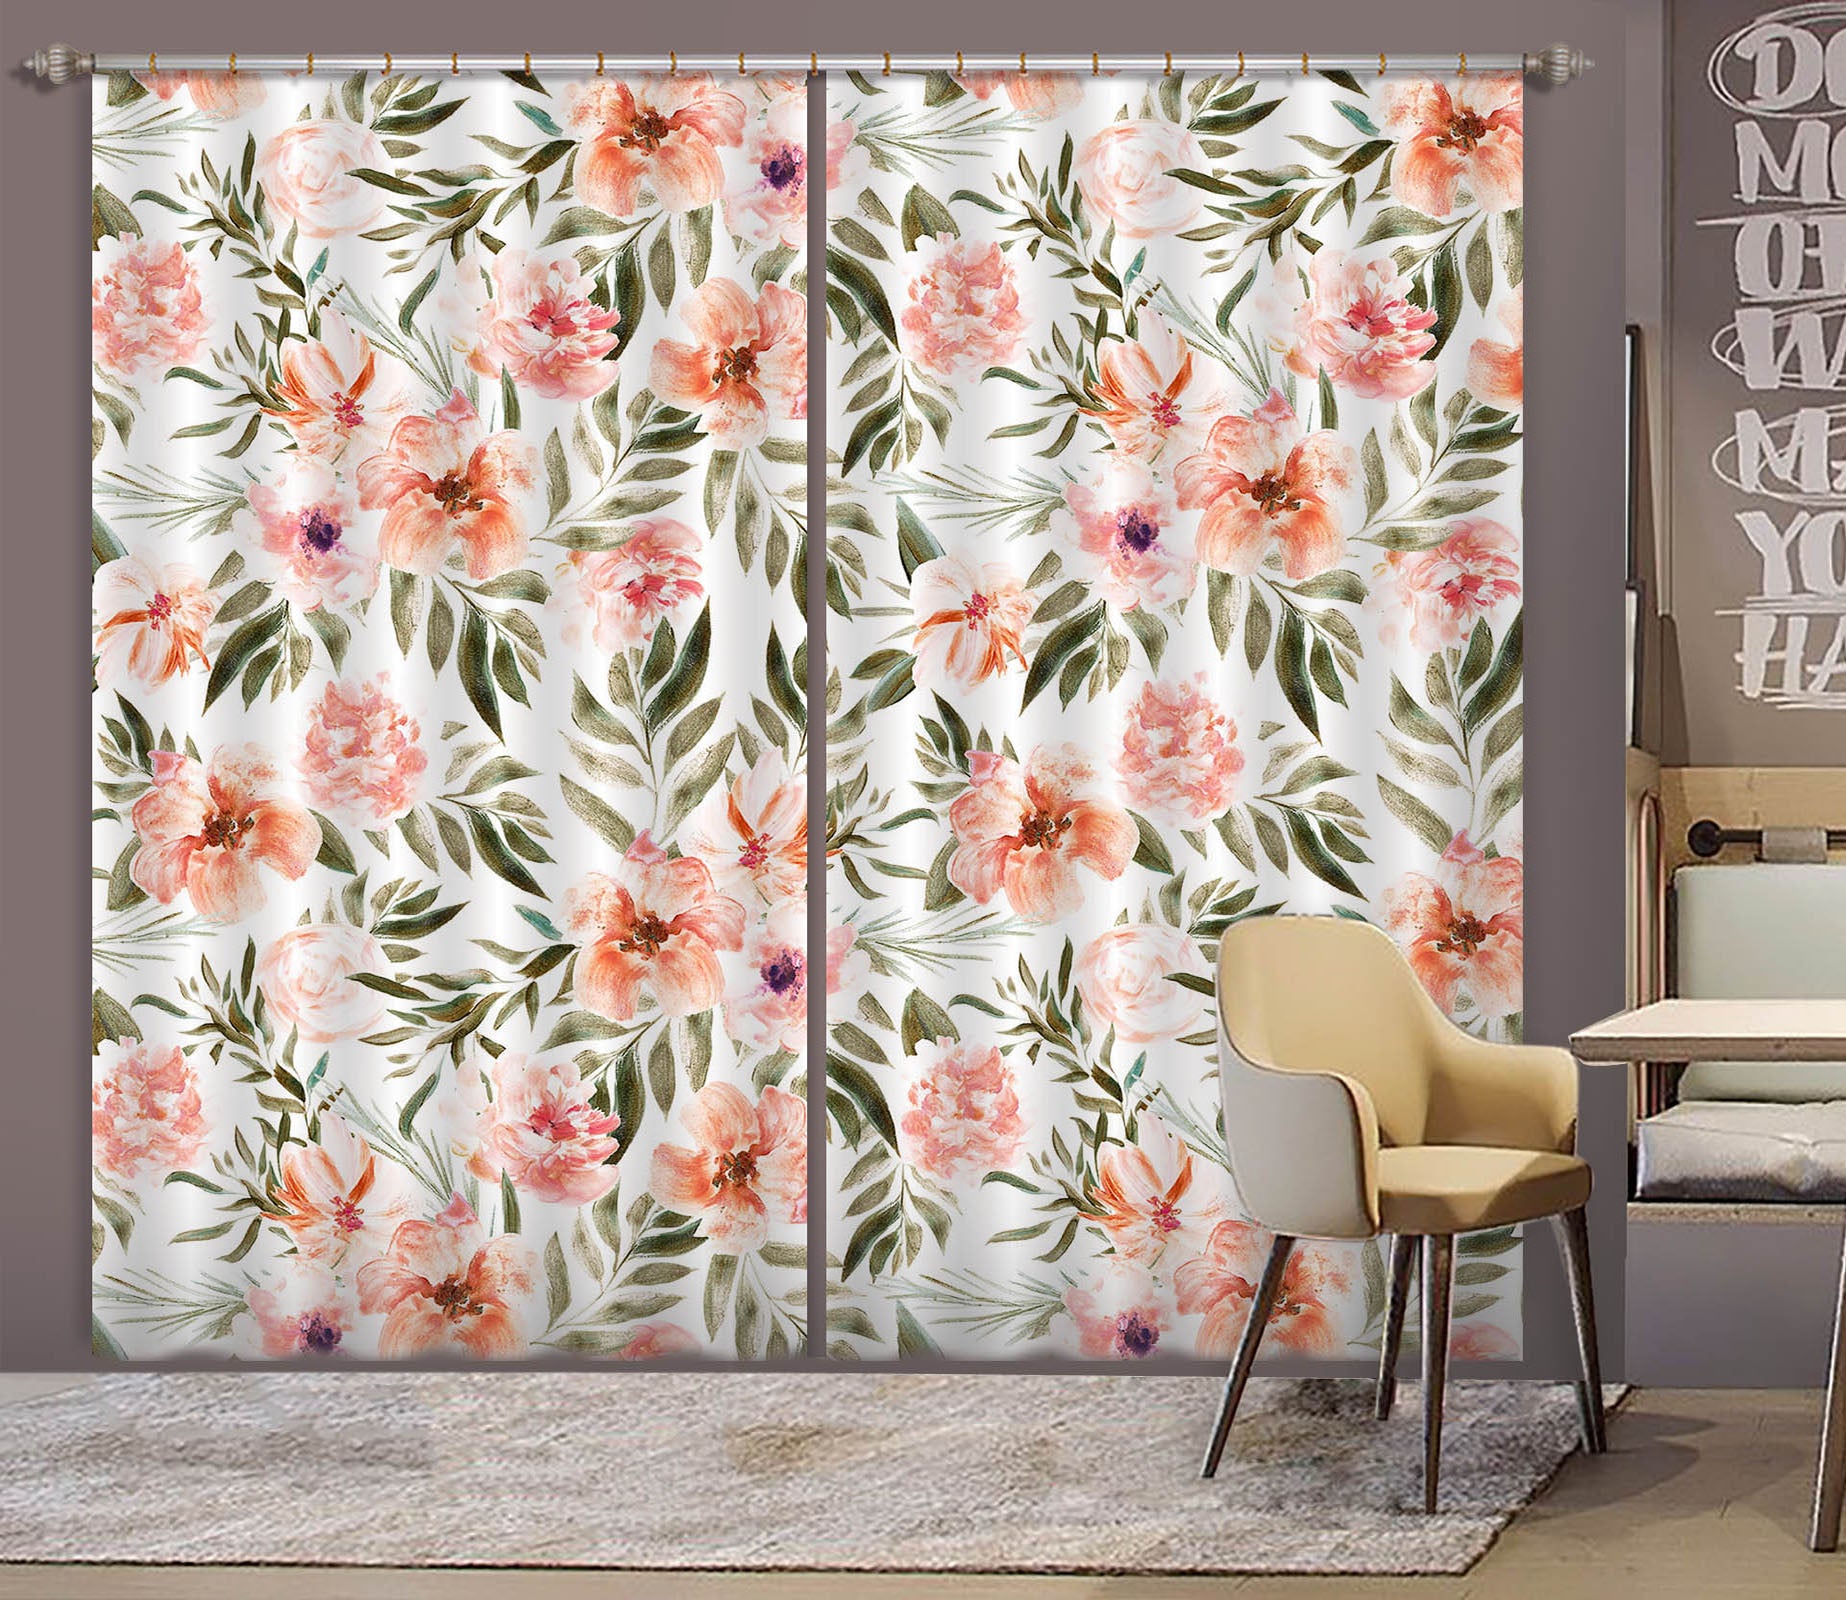 3D Flower Bloom 228 Uta Naumann Curtain Curtains Drapes